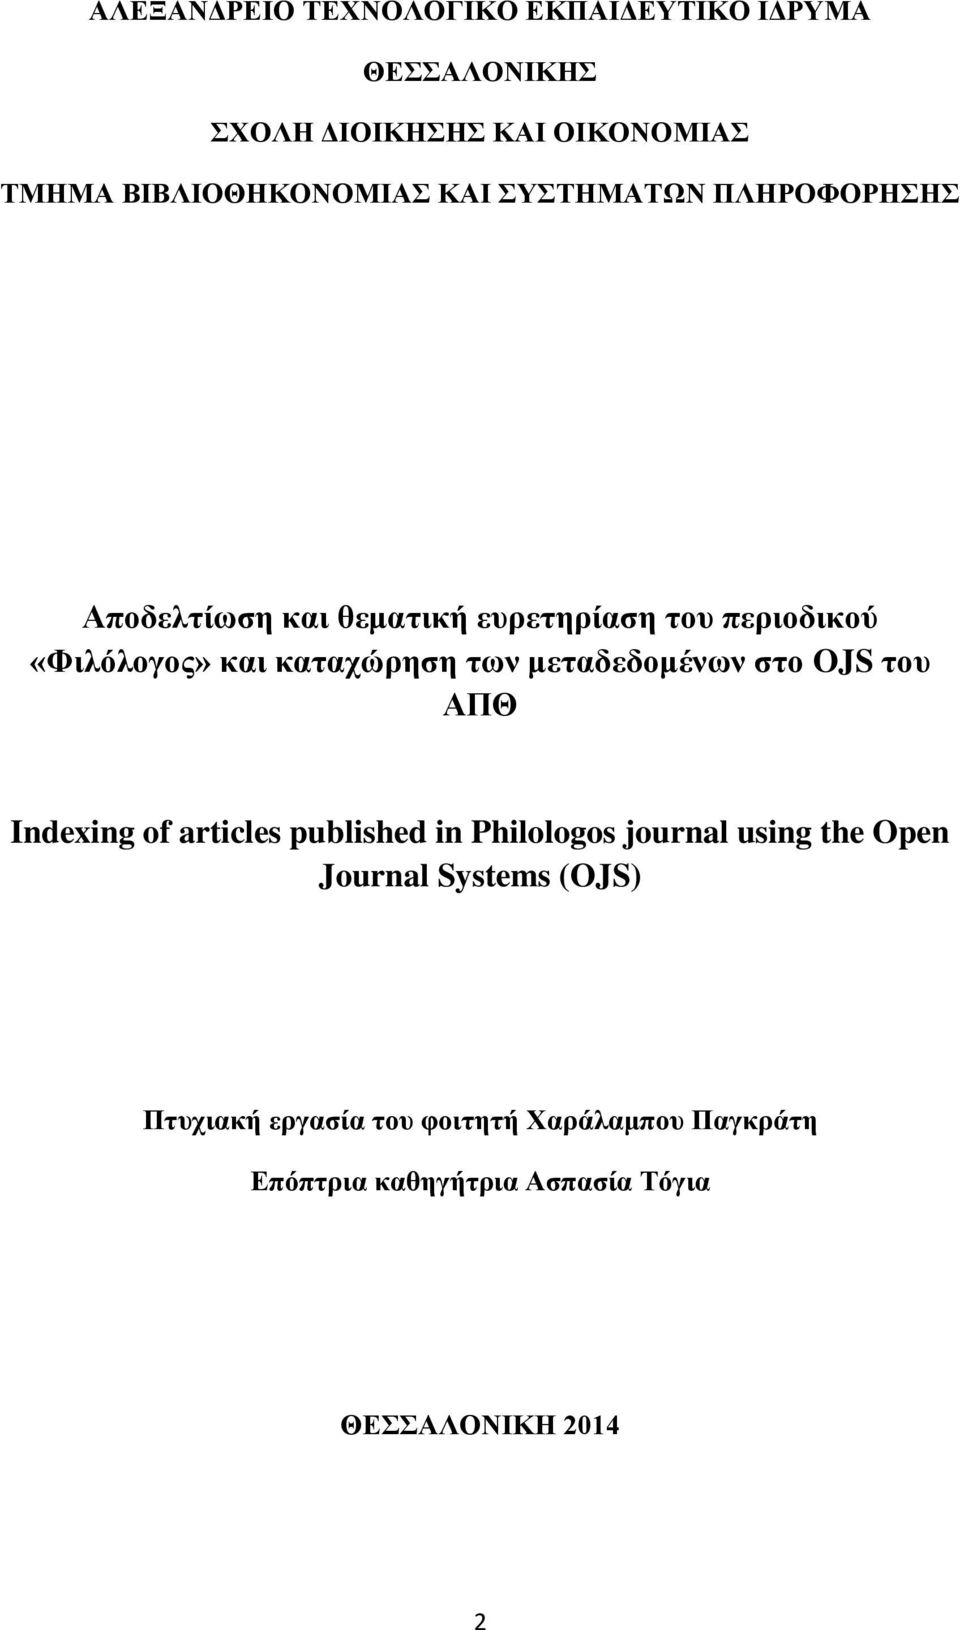 μεταδεδομένων στο OJS του ΑΠΘ Indexing of articles published in Philologos journal using the Open Journal